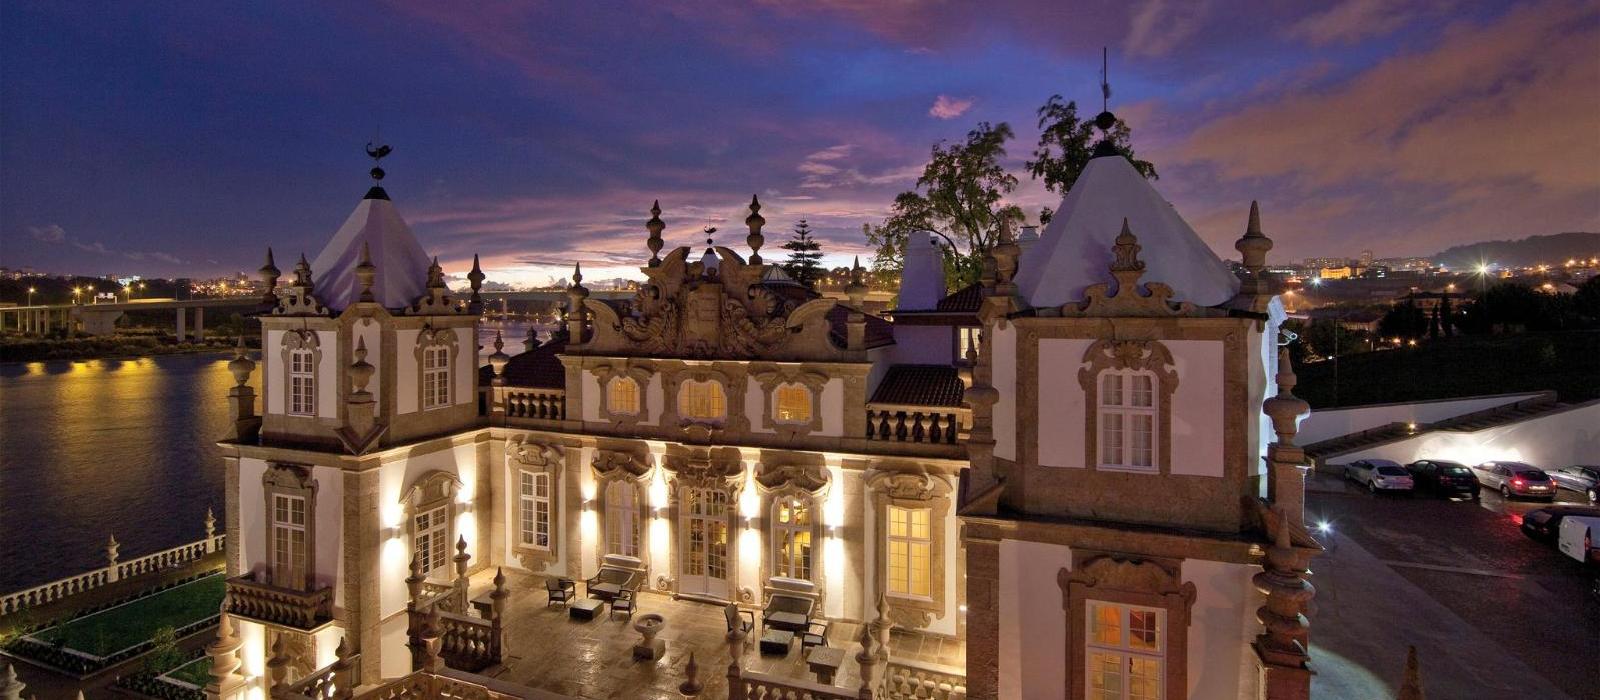 普斯塔那弗雷舒宫殿酒店(Pestana Palacio do Freixo - Pousada & National Monument) 图片  www.lhw.cn